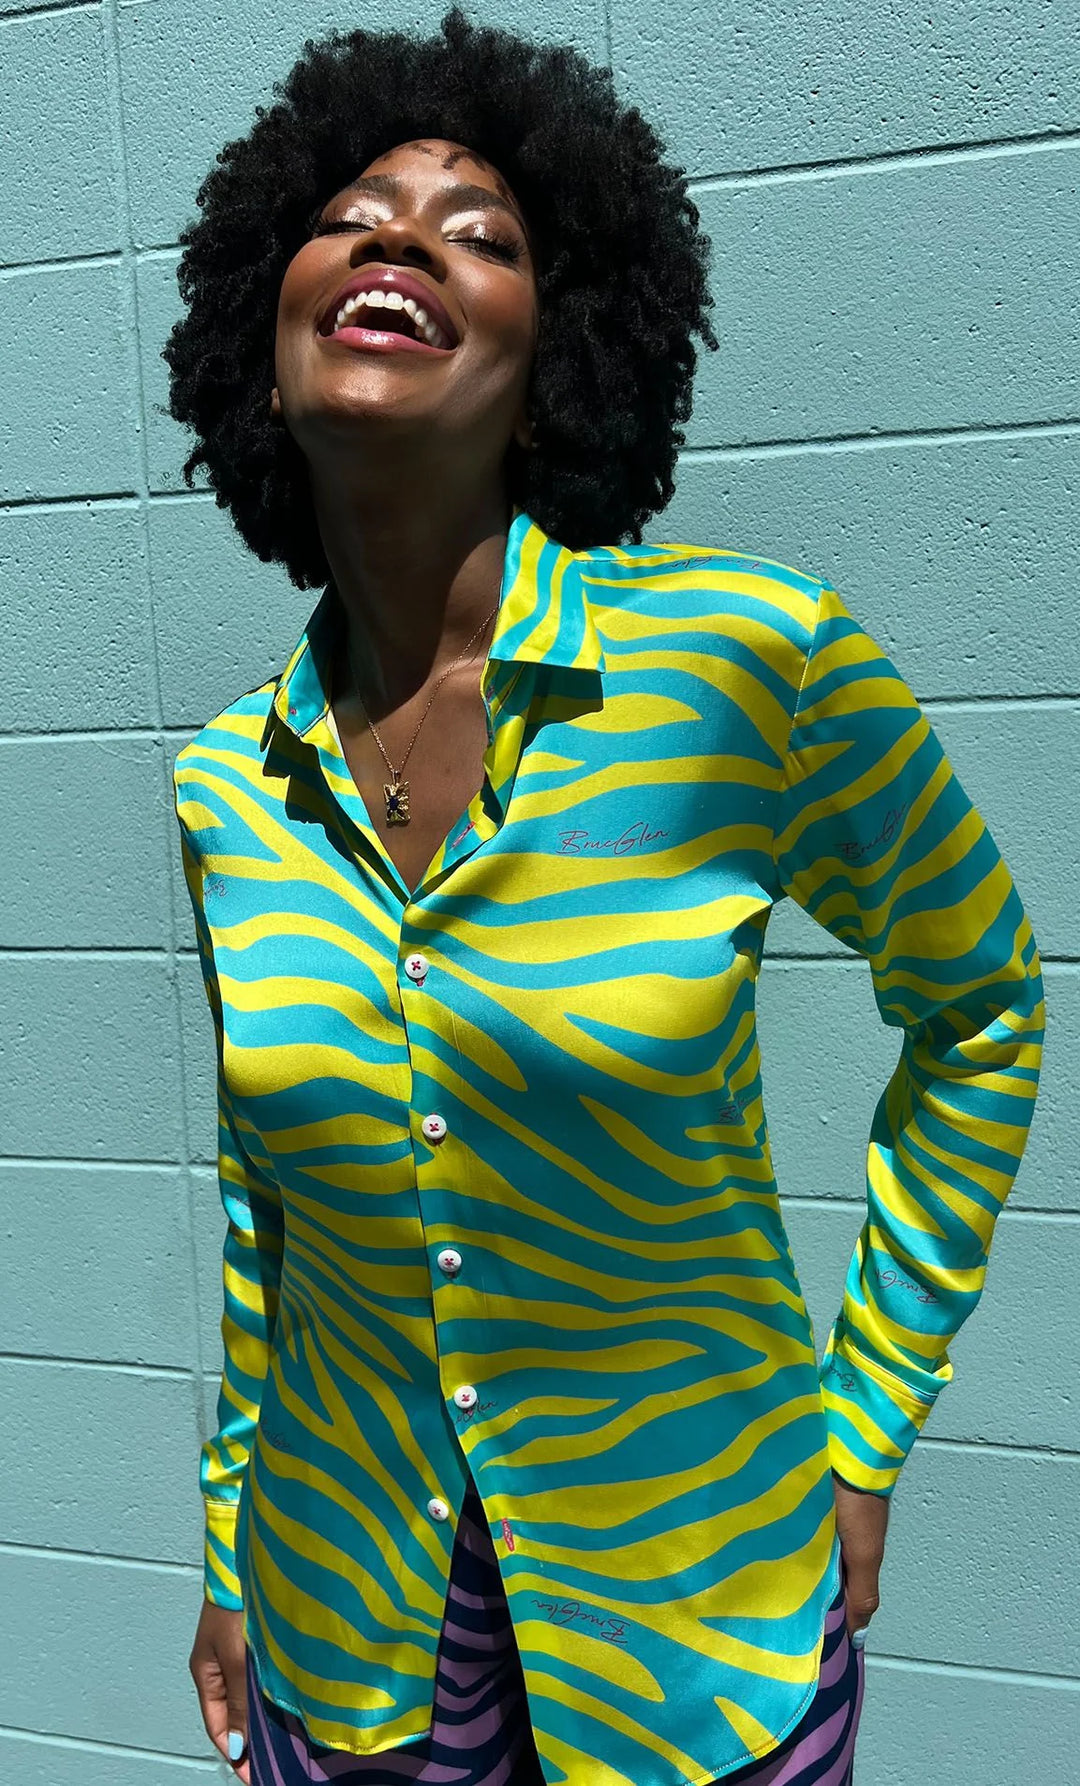 BruceGlen Neon Zebra Yellow and Blue Shirt